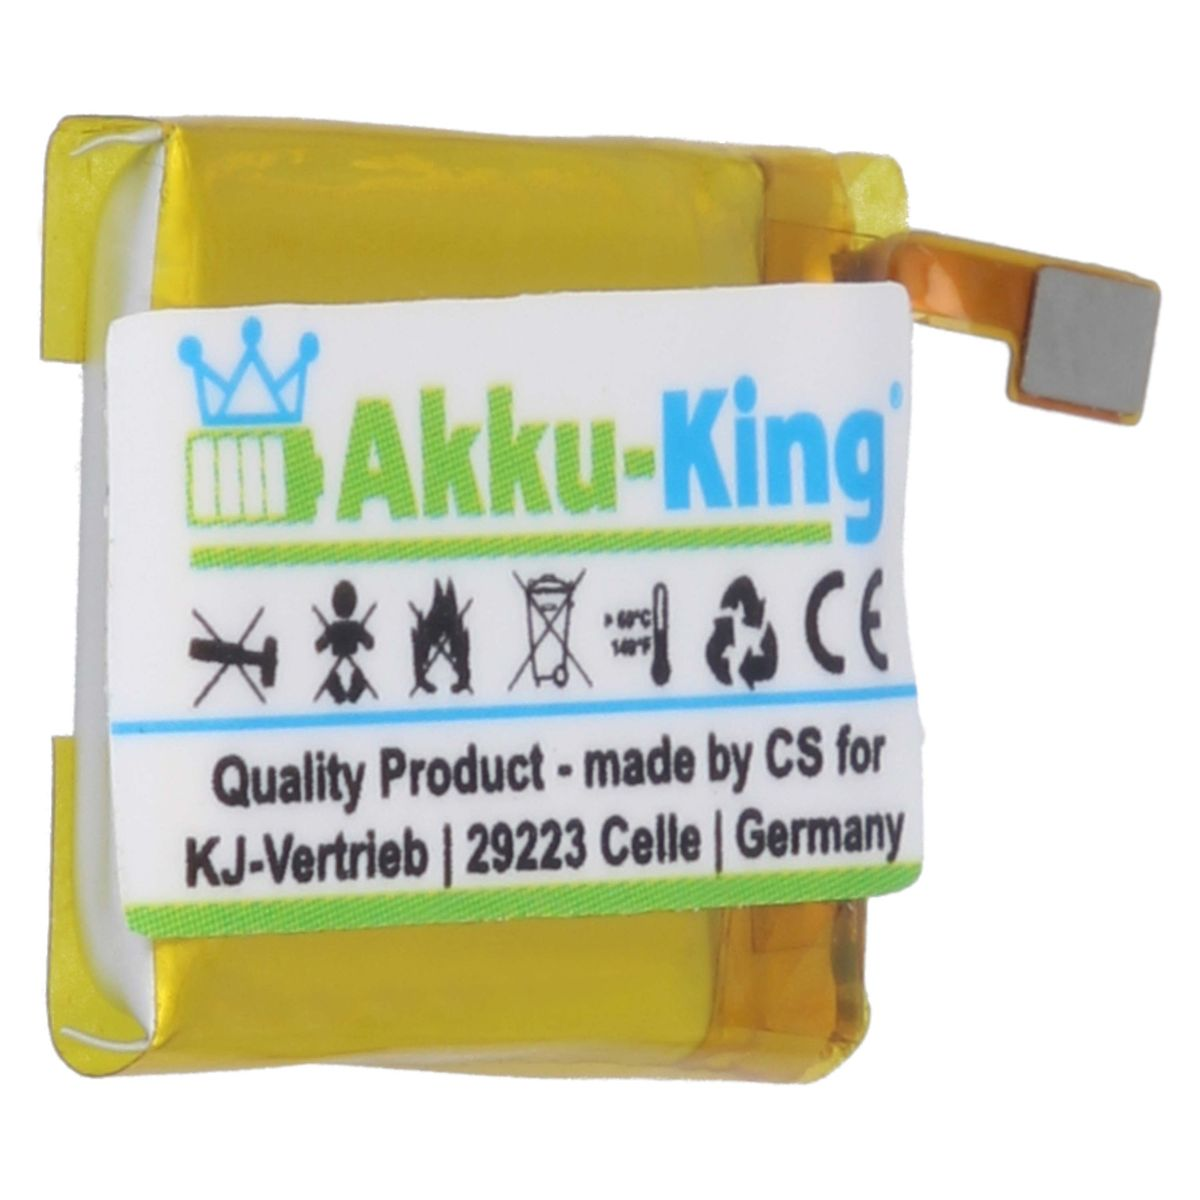 AKKU-KING mit kompatibel LSS271617 Fitbit 65mAh Akku 3.87 Volt, Li-Polymer Smartwatch-Akku,